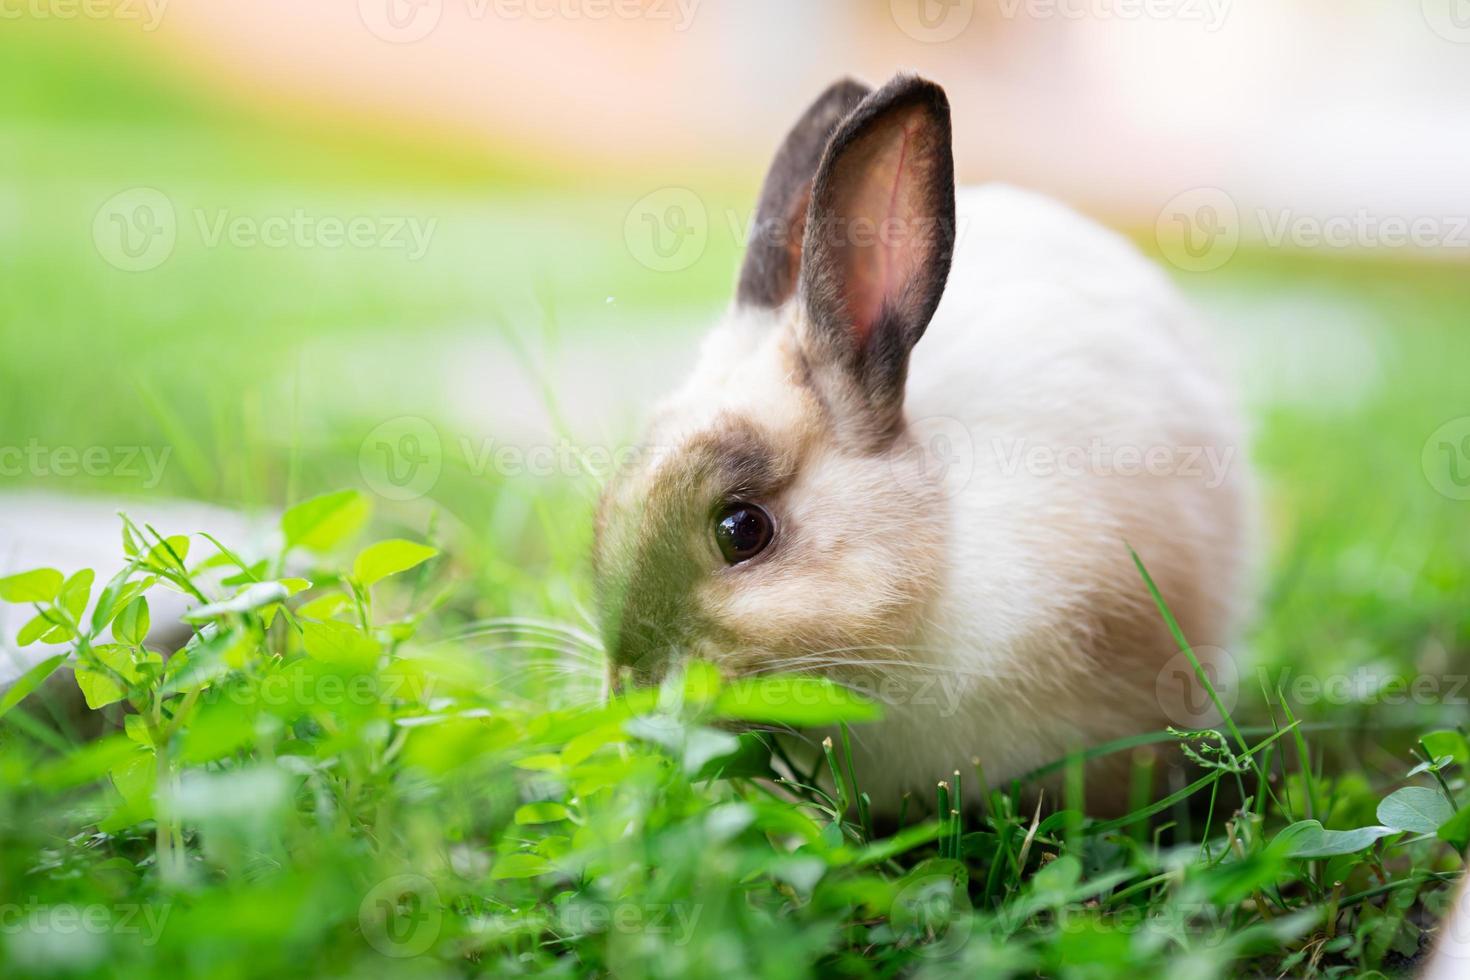 El conejo estaba comiendo hierba de las tapas en el césped verde. foto